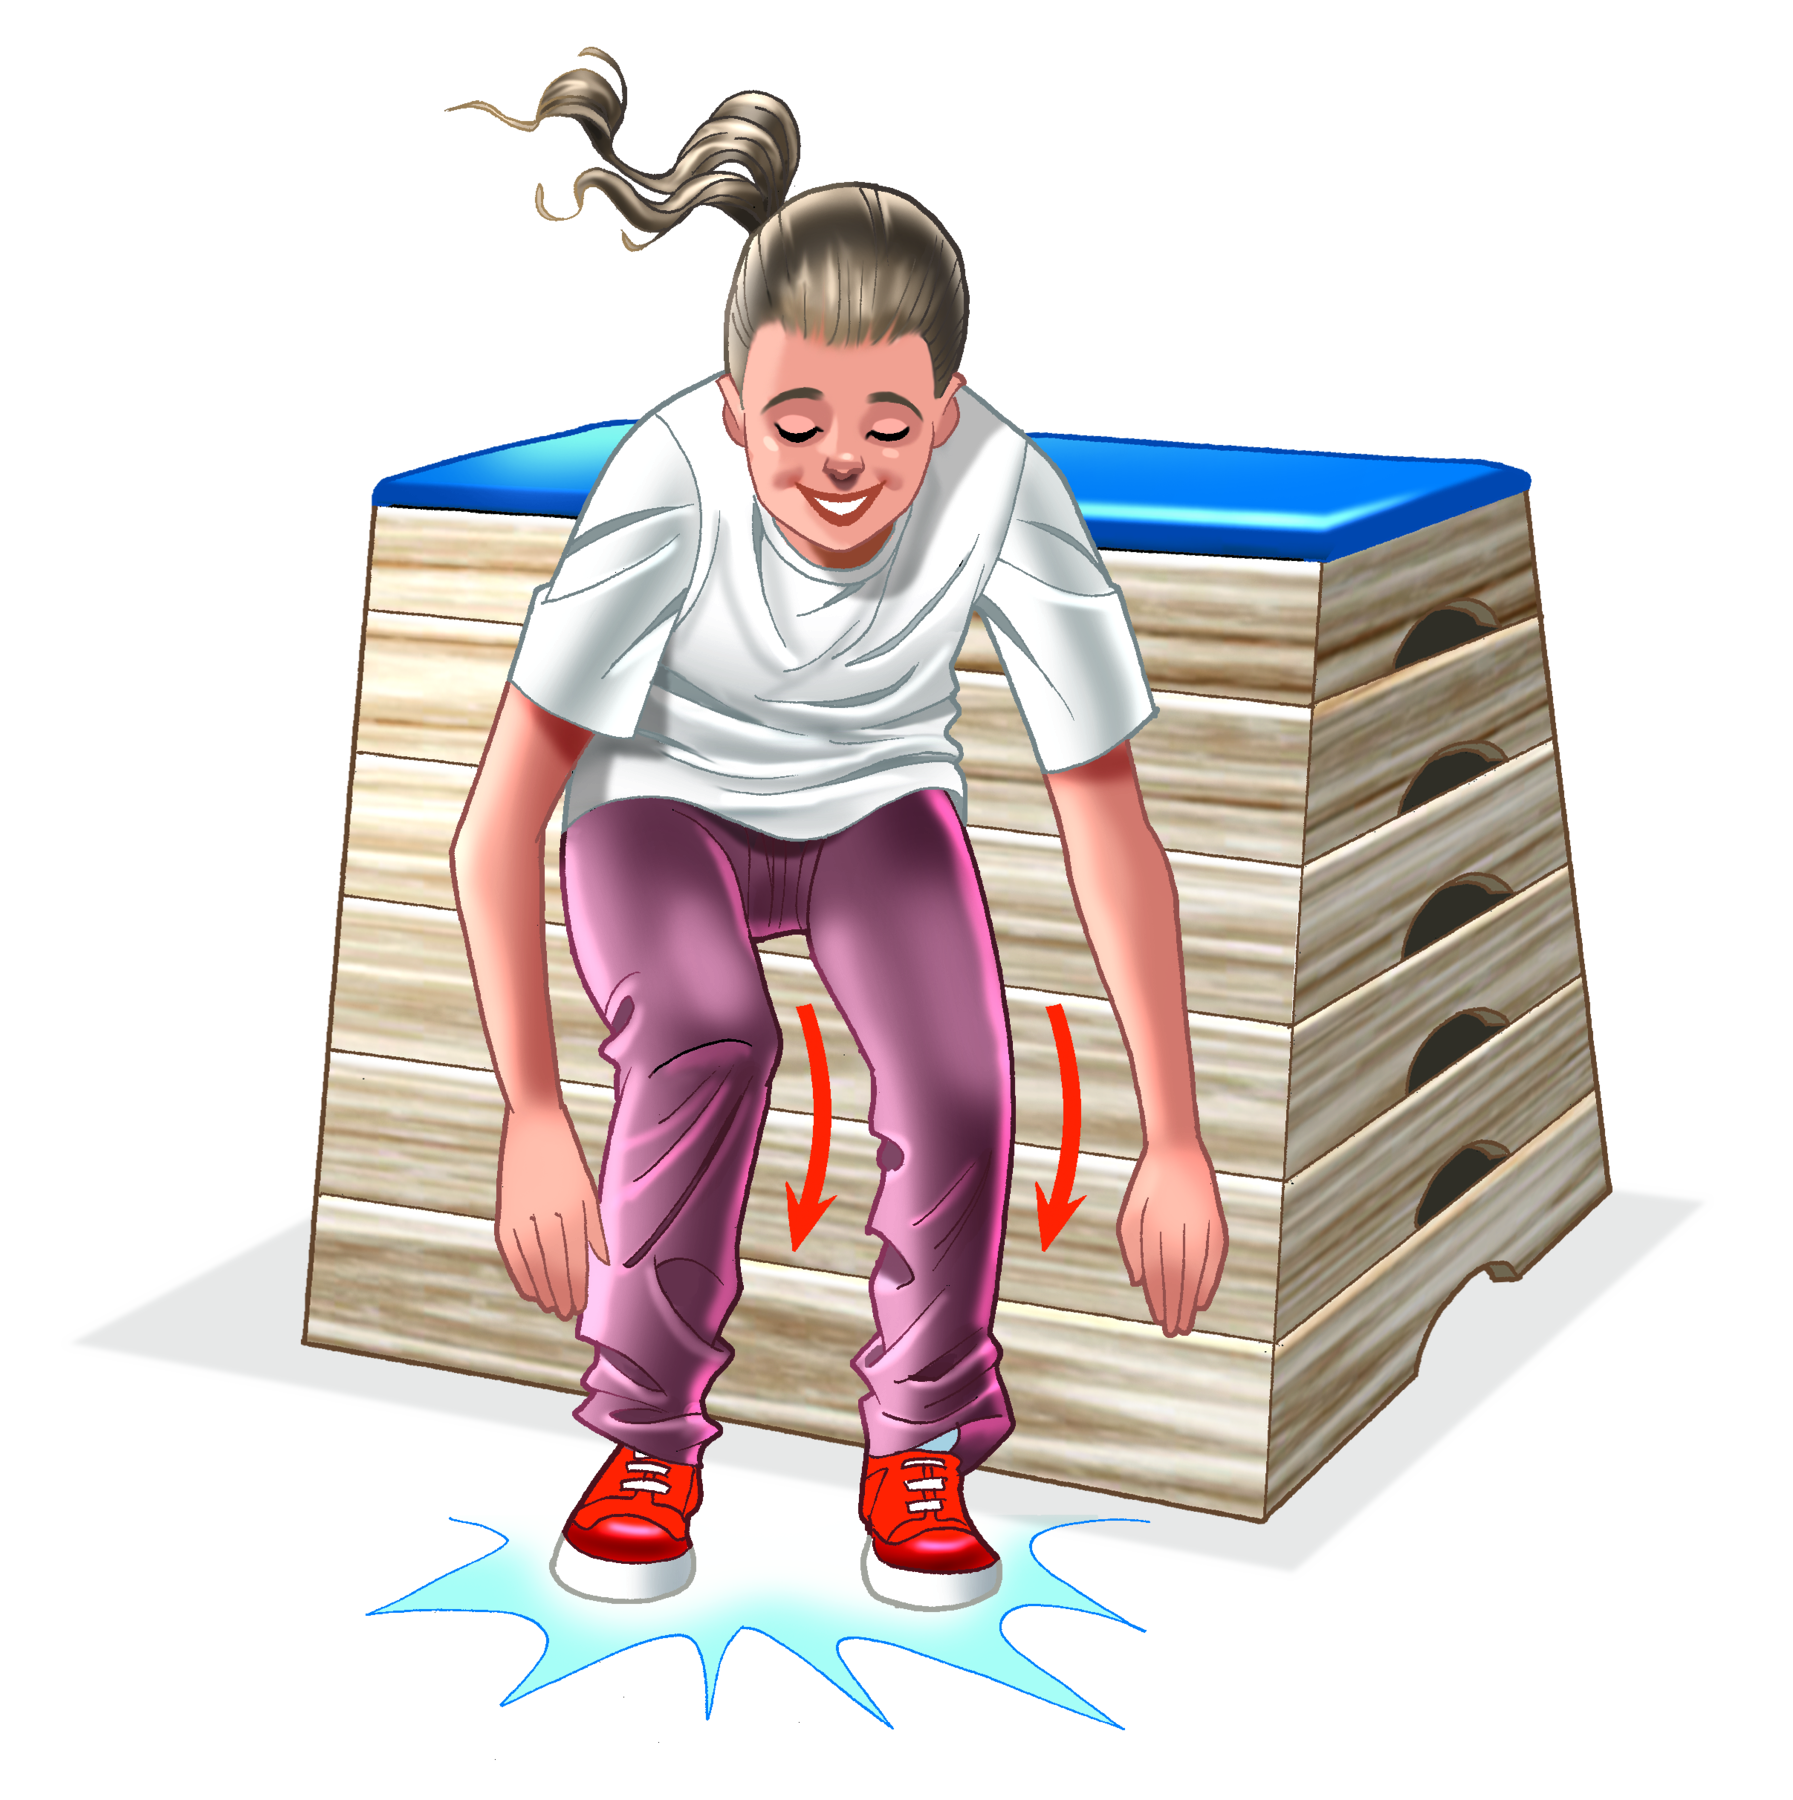 Ilustração. Menina de camiseta branca, calça marrom e tênis. Ela está aterrissando no chão, depois de ter saltado de um plinto, apoiando os dois pés no chão, com os joelhos flexionados e o corpo inclinado para a frente. Setas indicam o movimento dos joelhos flexionados.